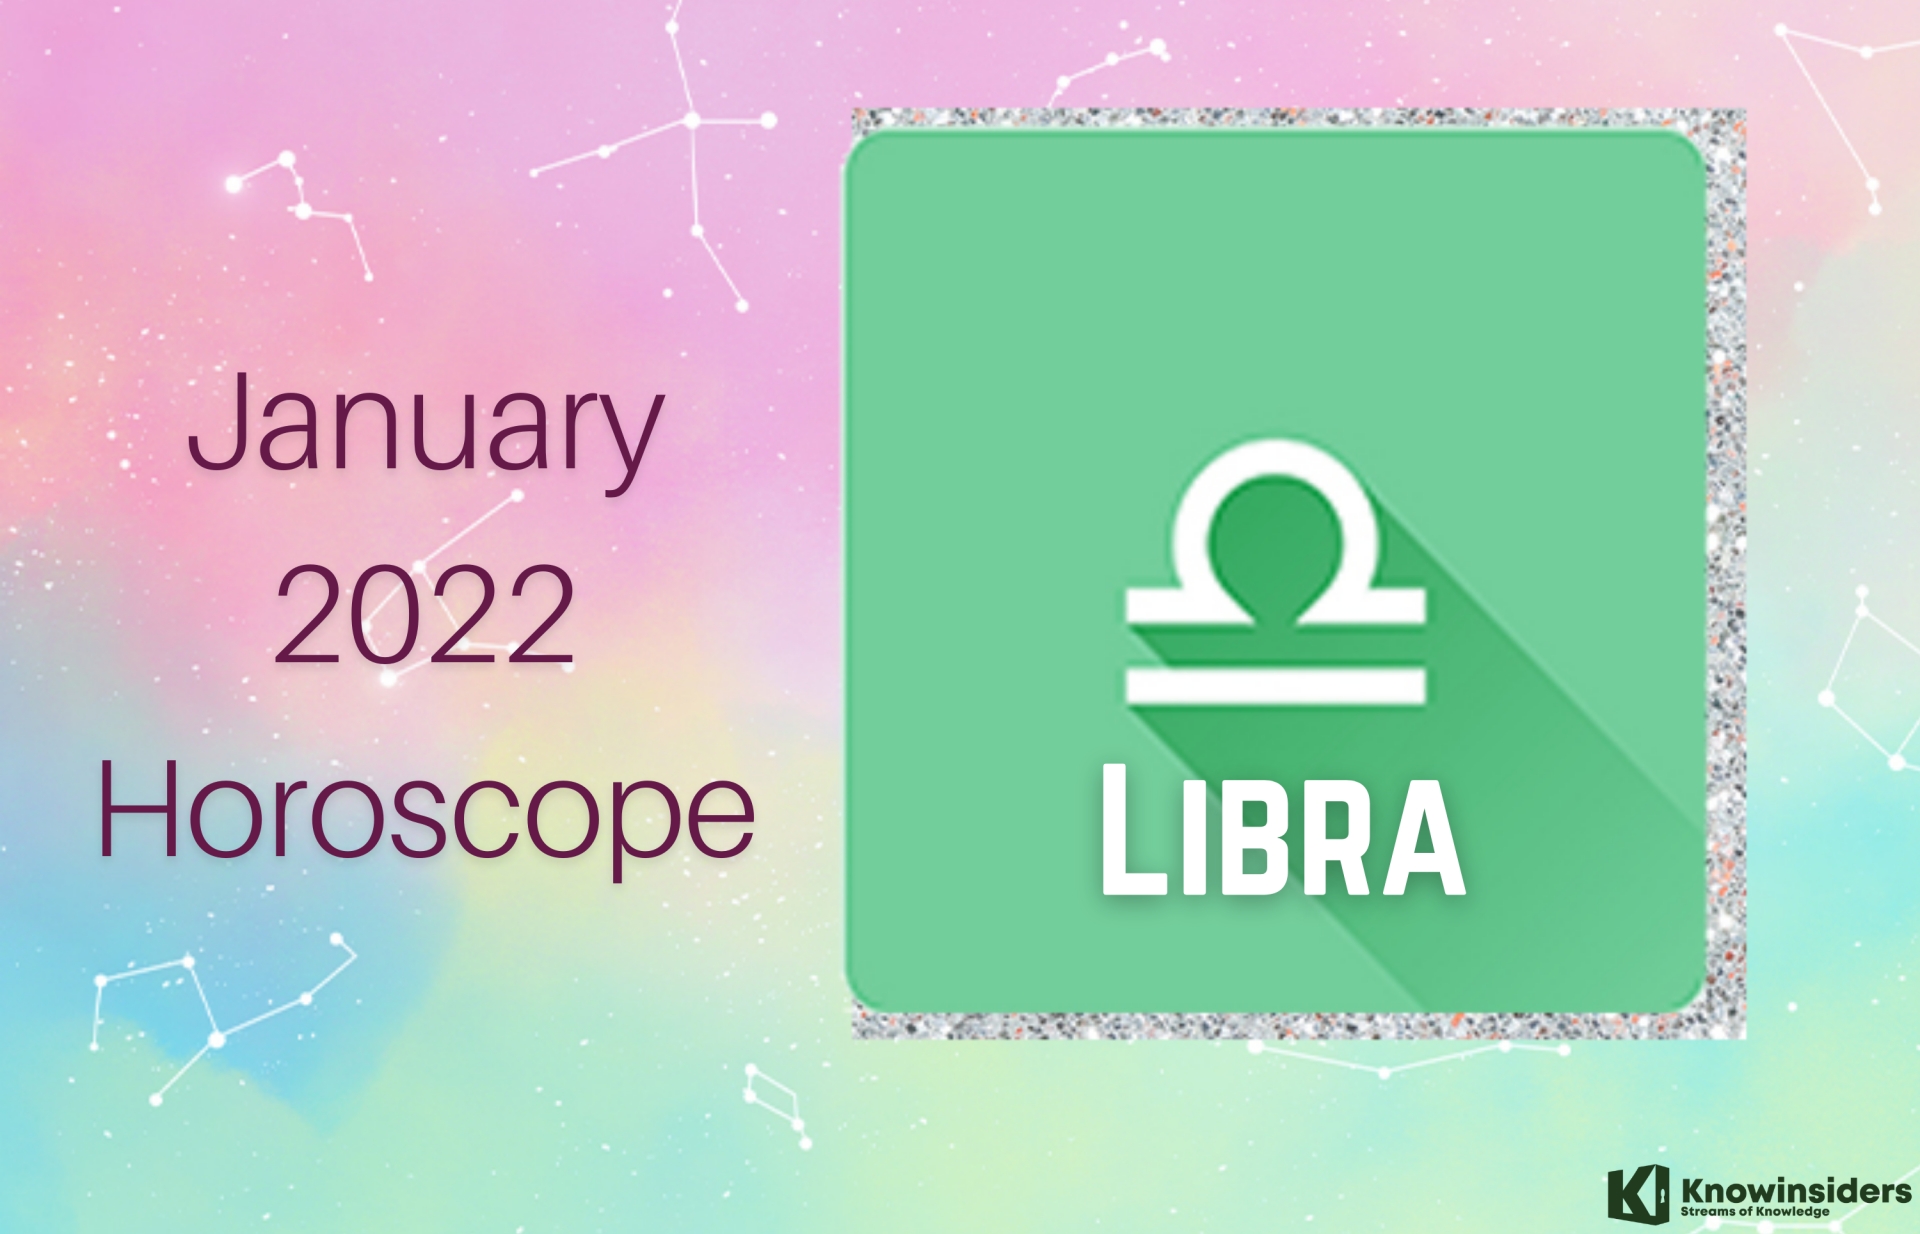 LIBRA January 2022 Horoscope: Prediction for Love, Career, Money